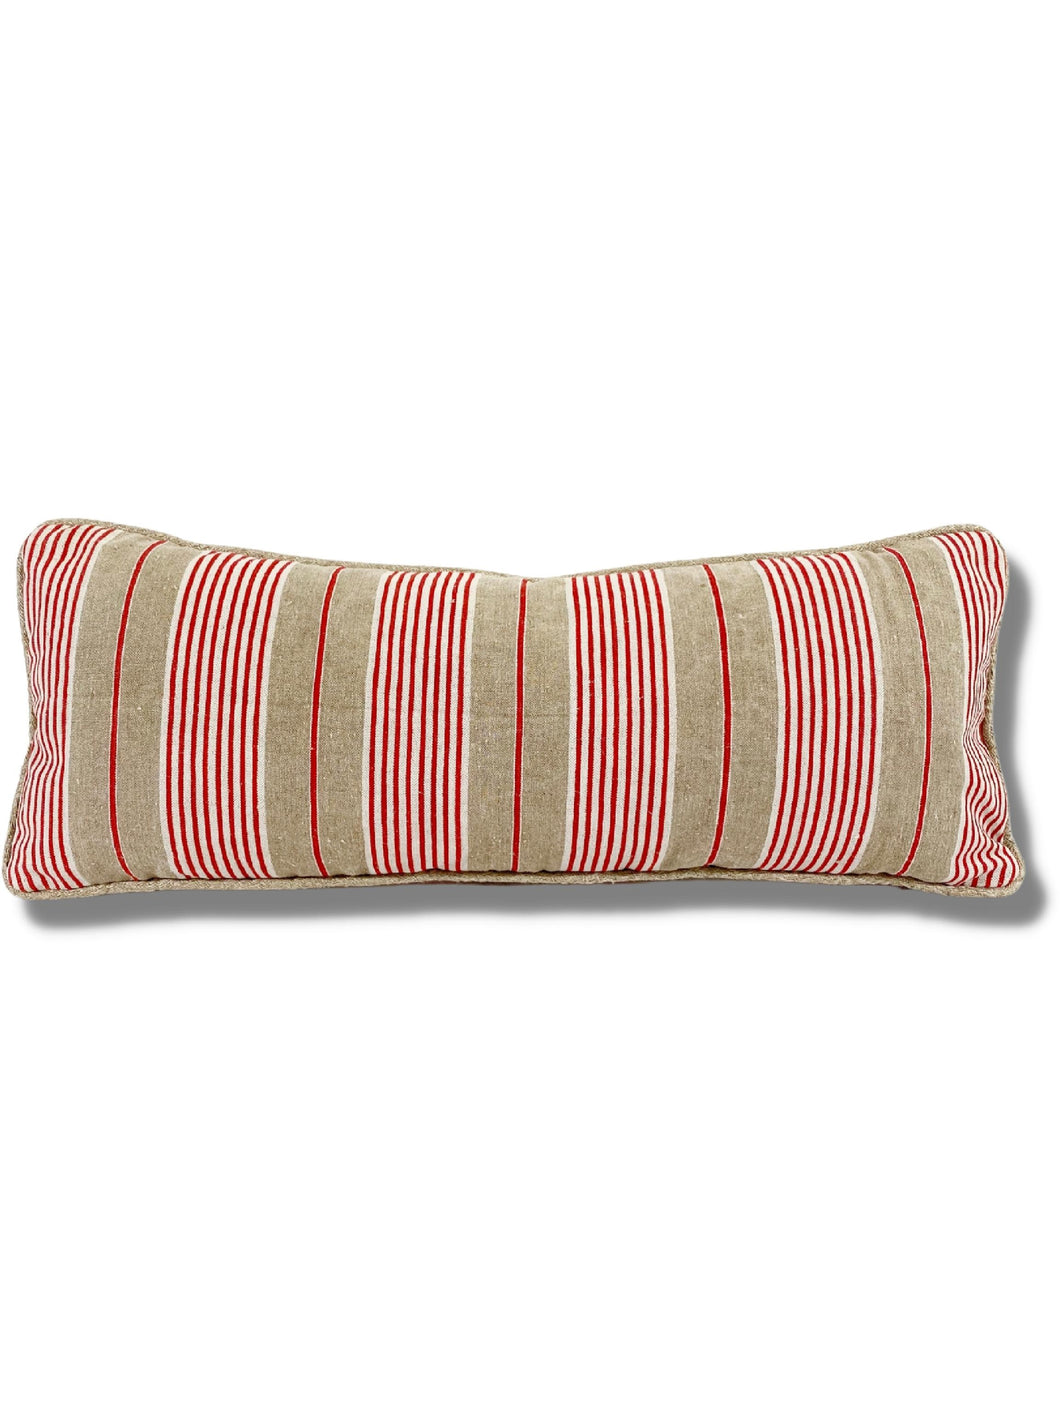 Striped Lumbar Pillow